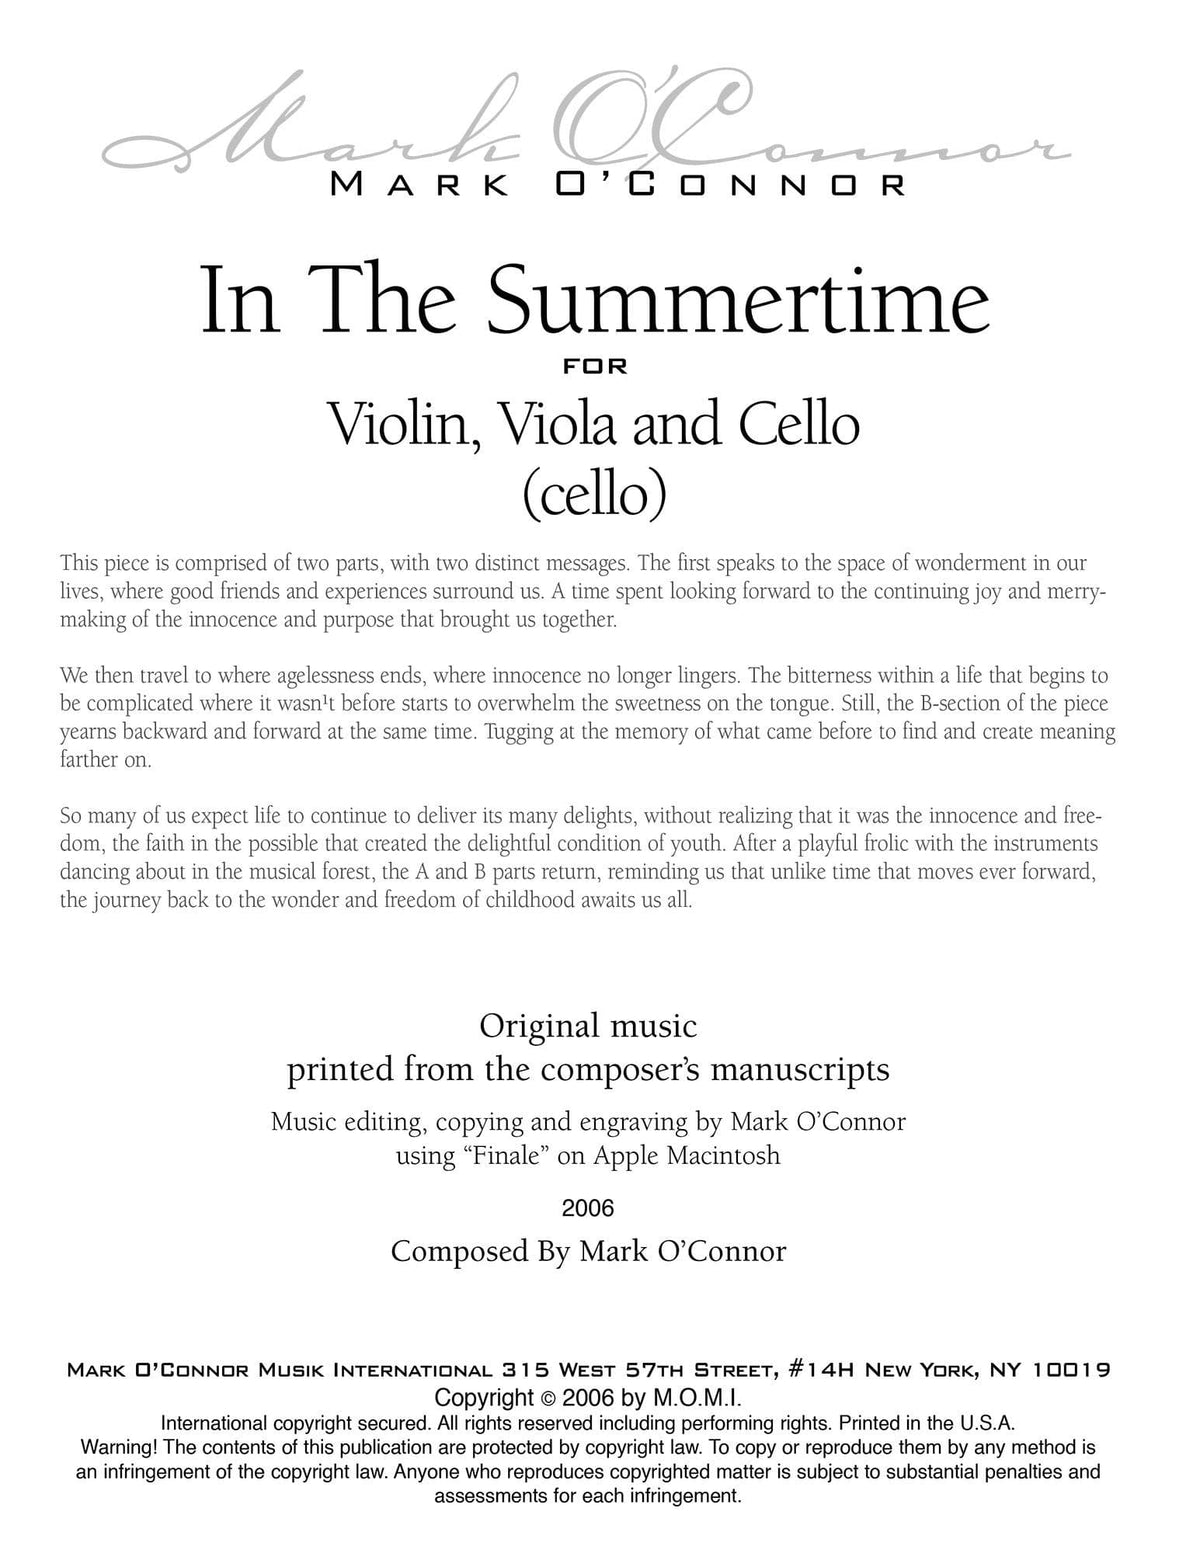 O'Connor, Mark - In the Summertime for Violin, Viola, and Cello - Cello - Digital Download